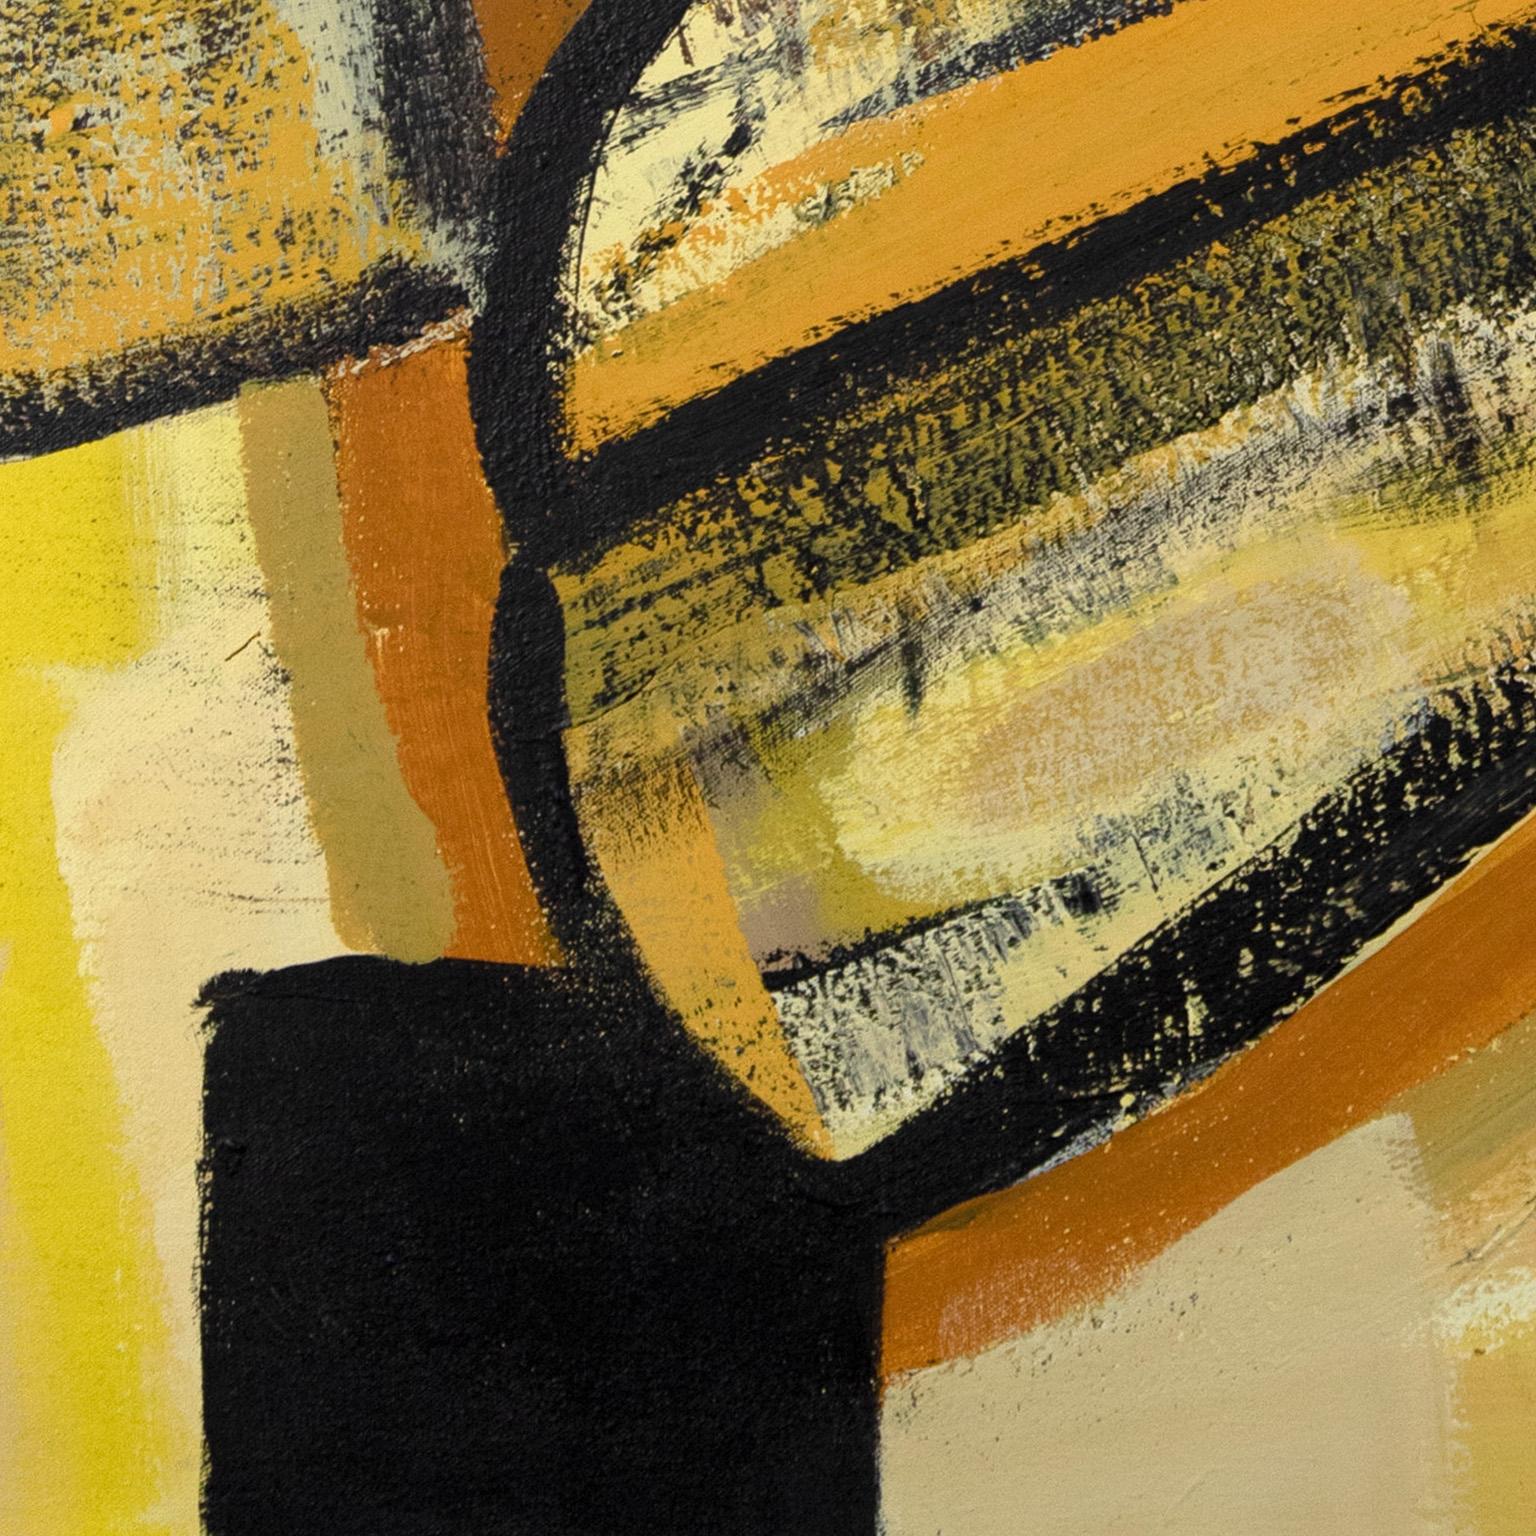 La grande émancipation de Parris Jaru est une peinture à l'huile de 48 x 36 pouces. Les couleurs principales sont le jaune et le brun. La surface est définie par un épais empâtement de peinture, réalisé avec des pigments d'origine végétale que Jaru